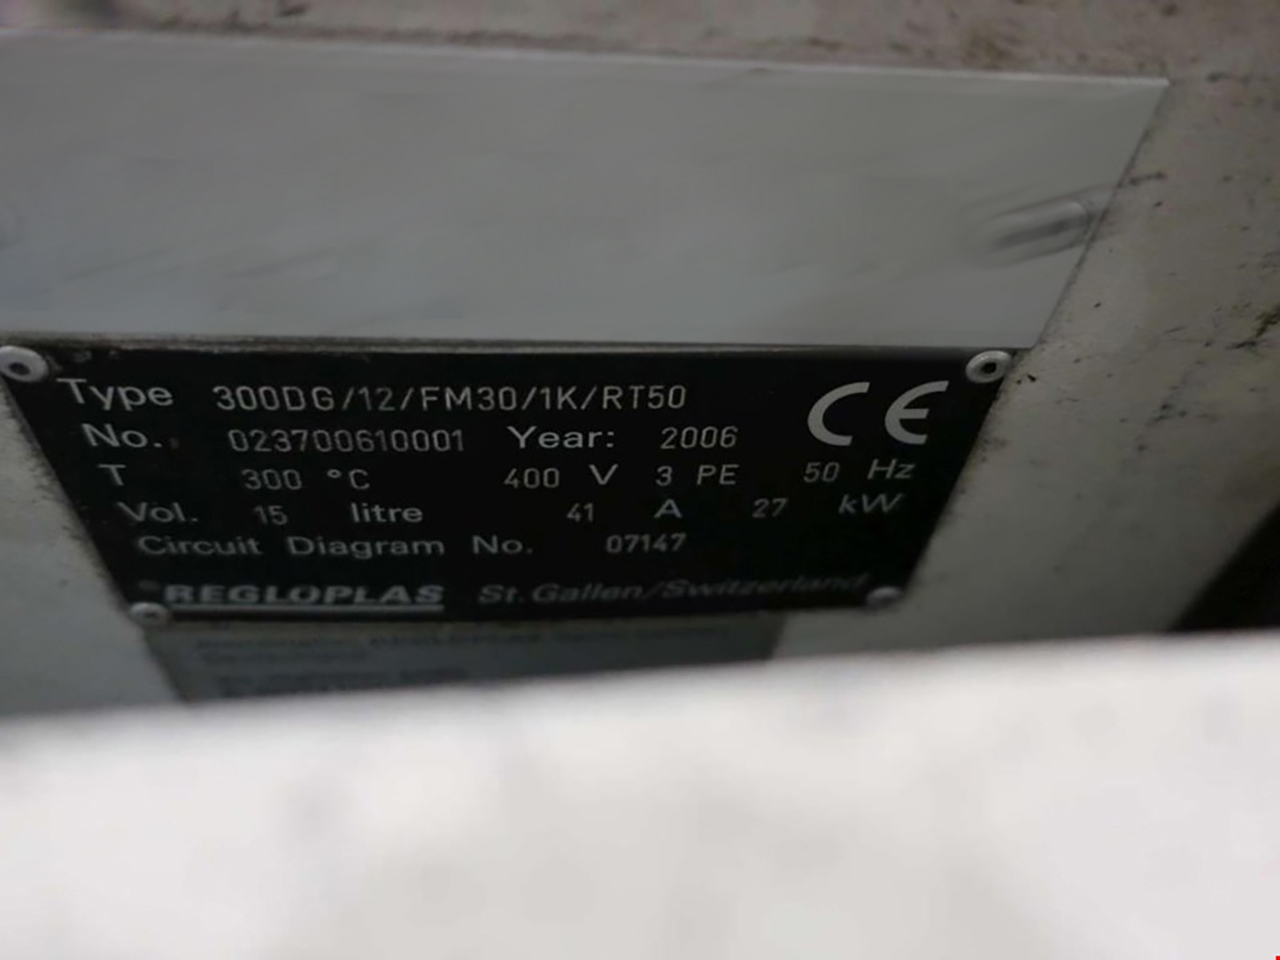 Regloplas 300DG/12/FM30/1K/RT50 sıcaklık kontrol ünitesi ZU2139, kullanılmış